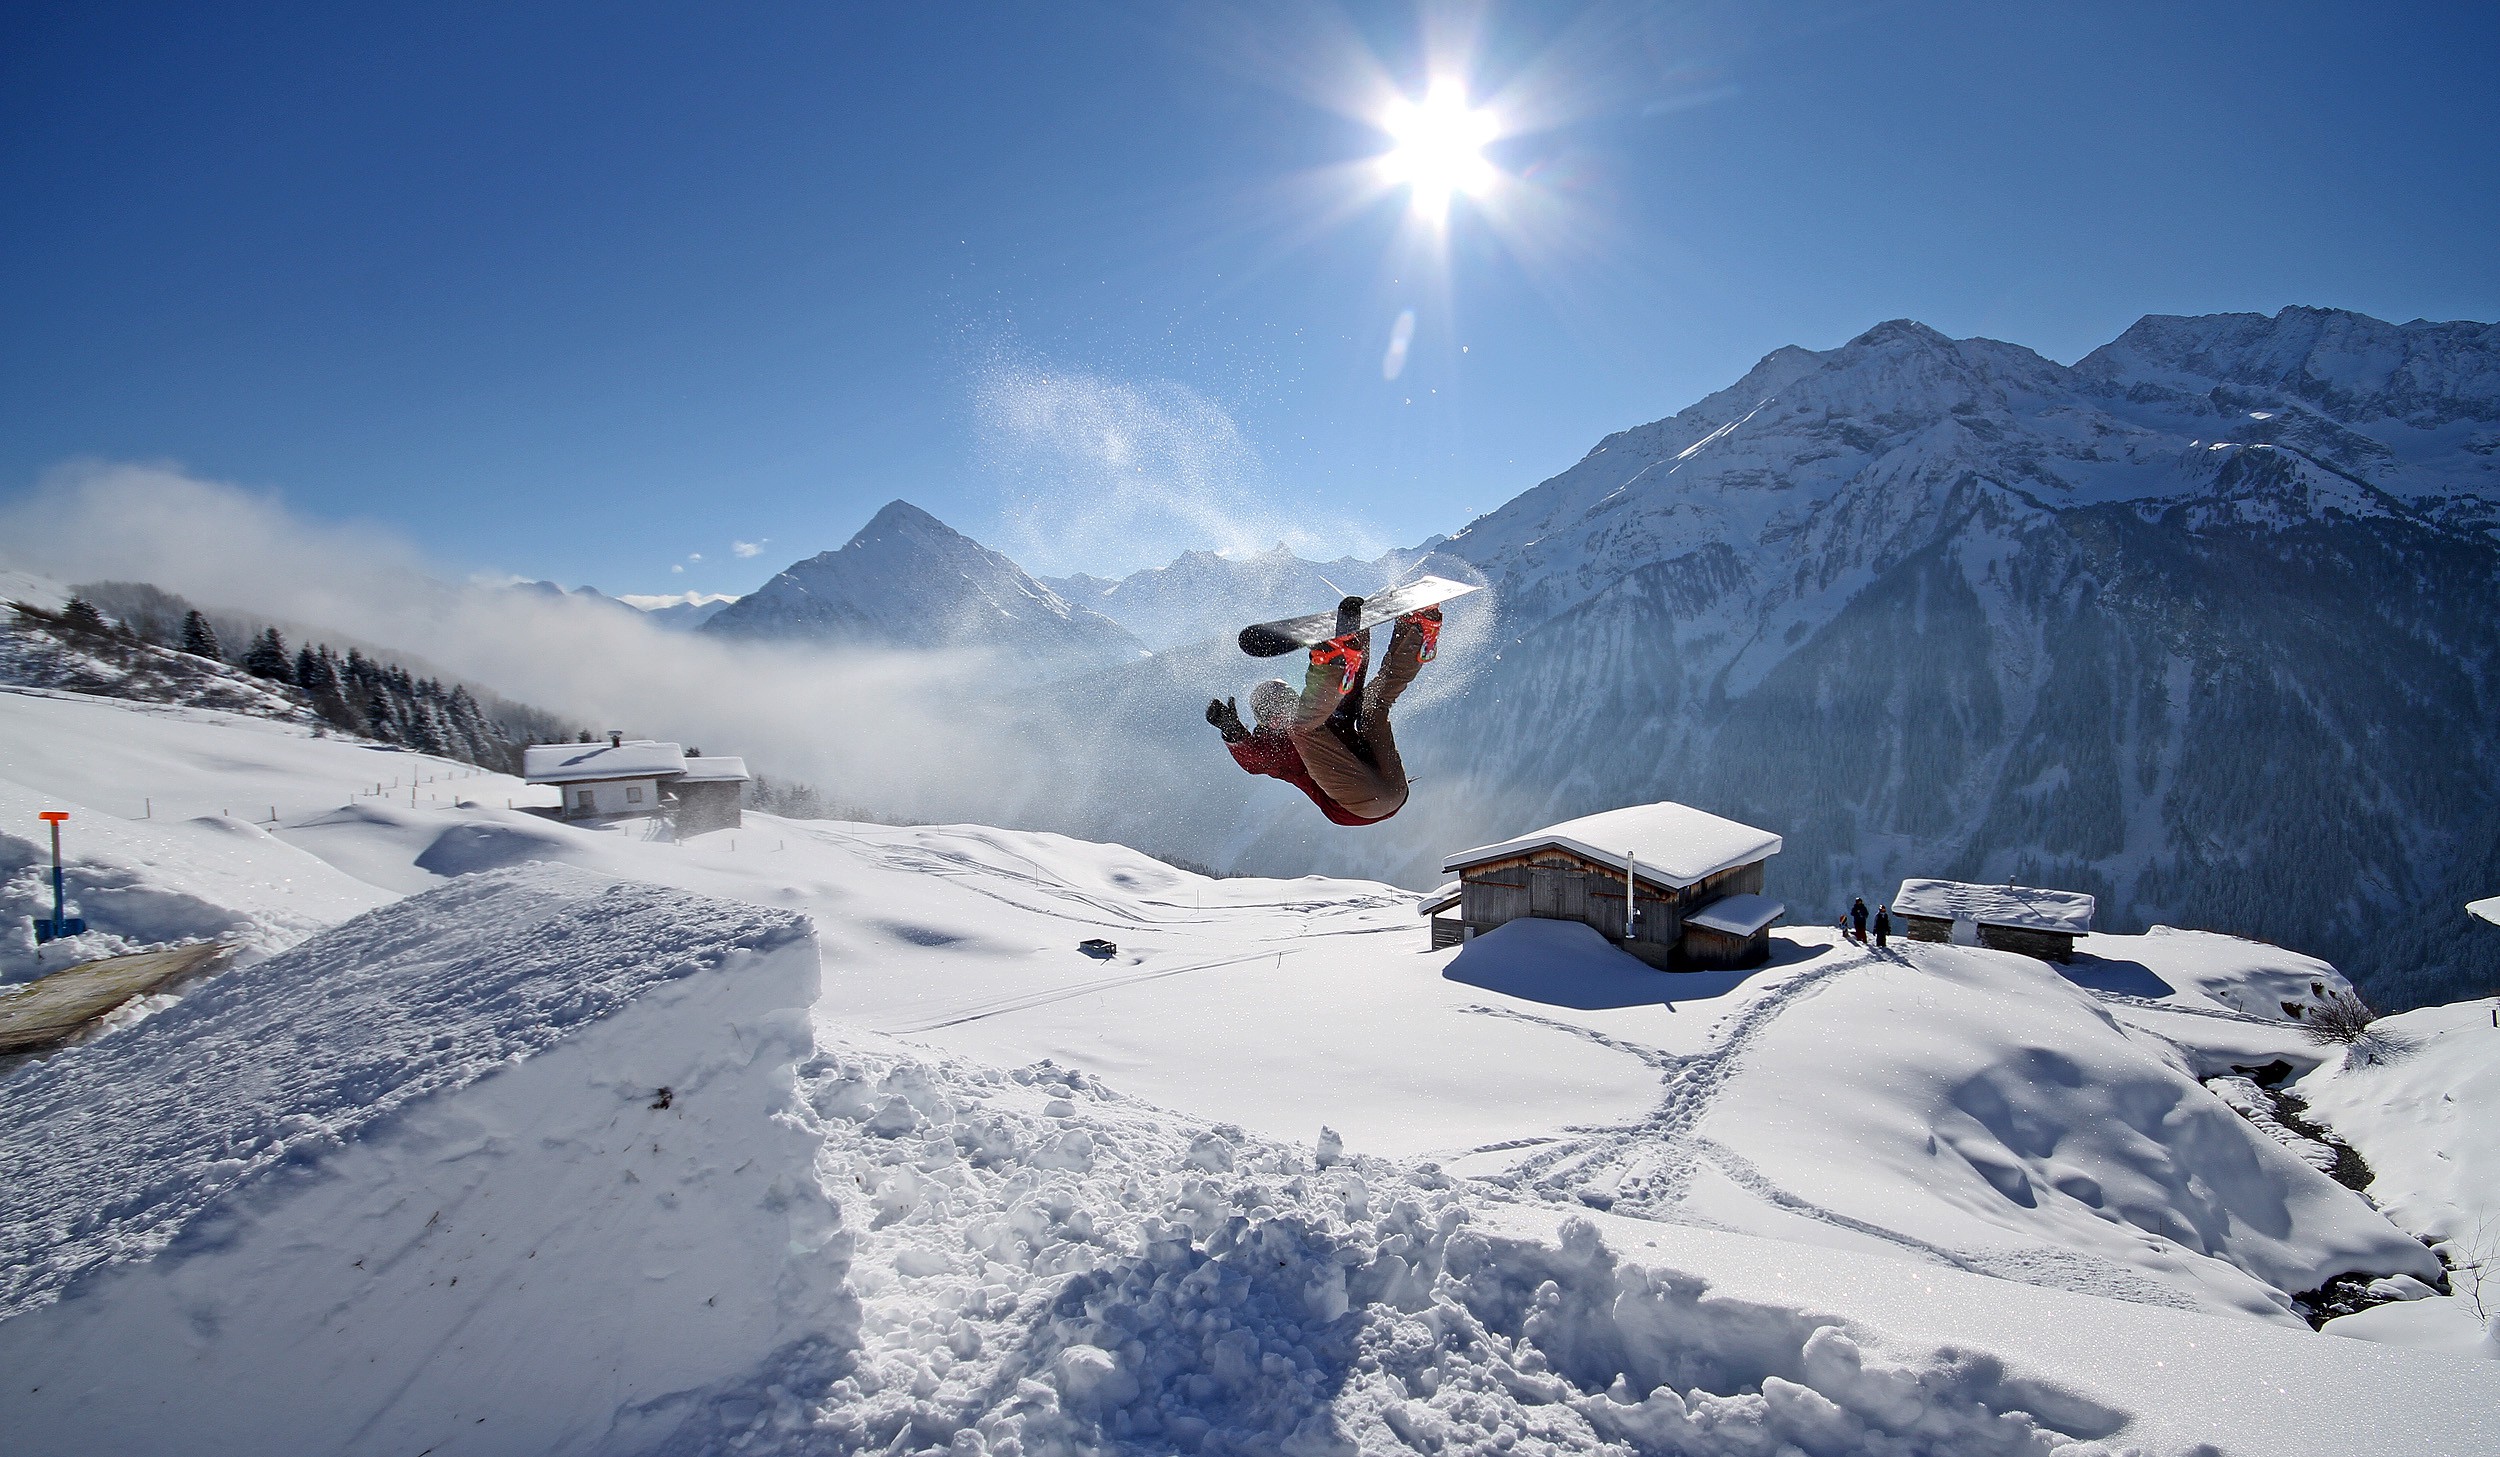 Comment faire un backflip en snowboard